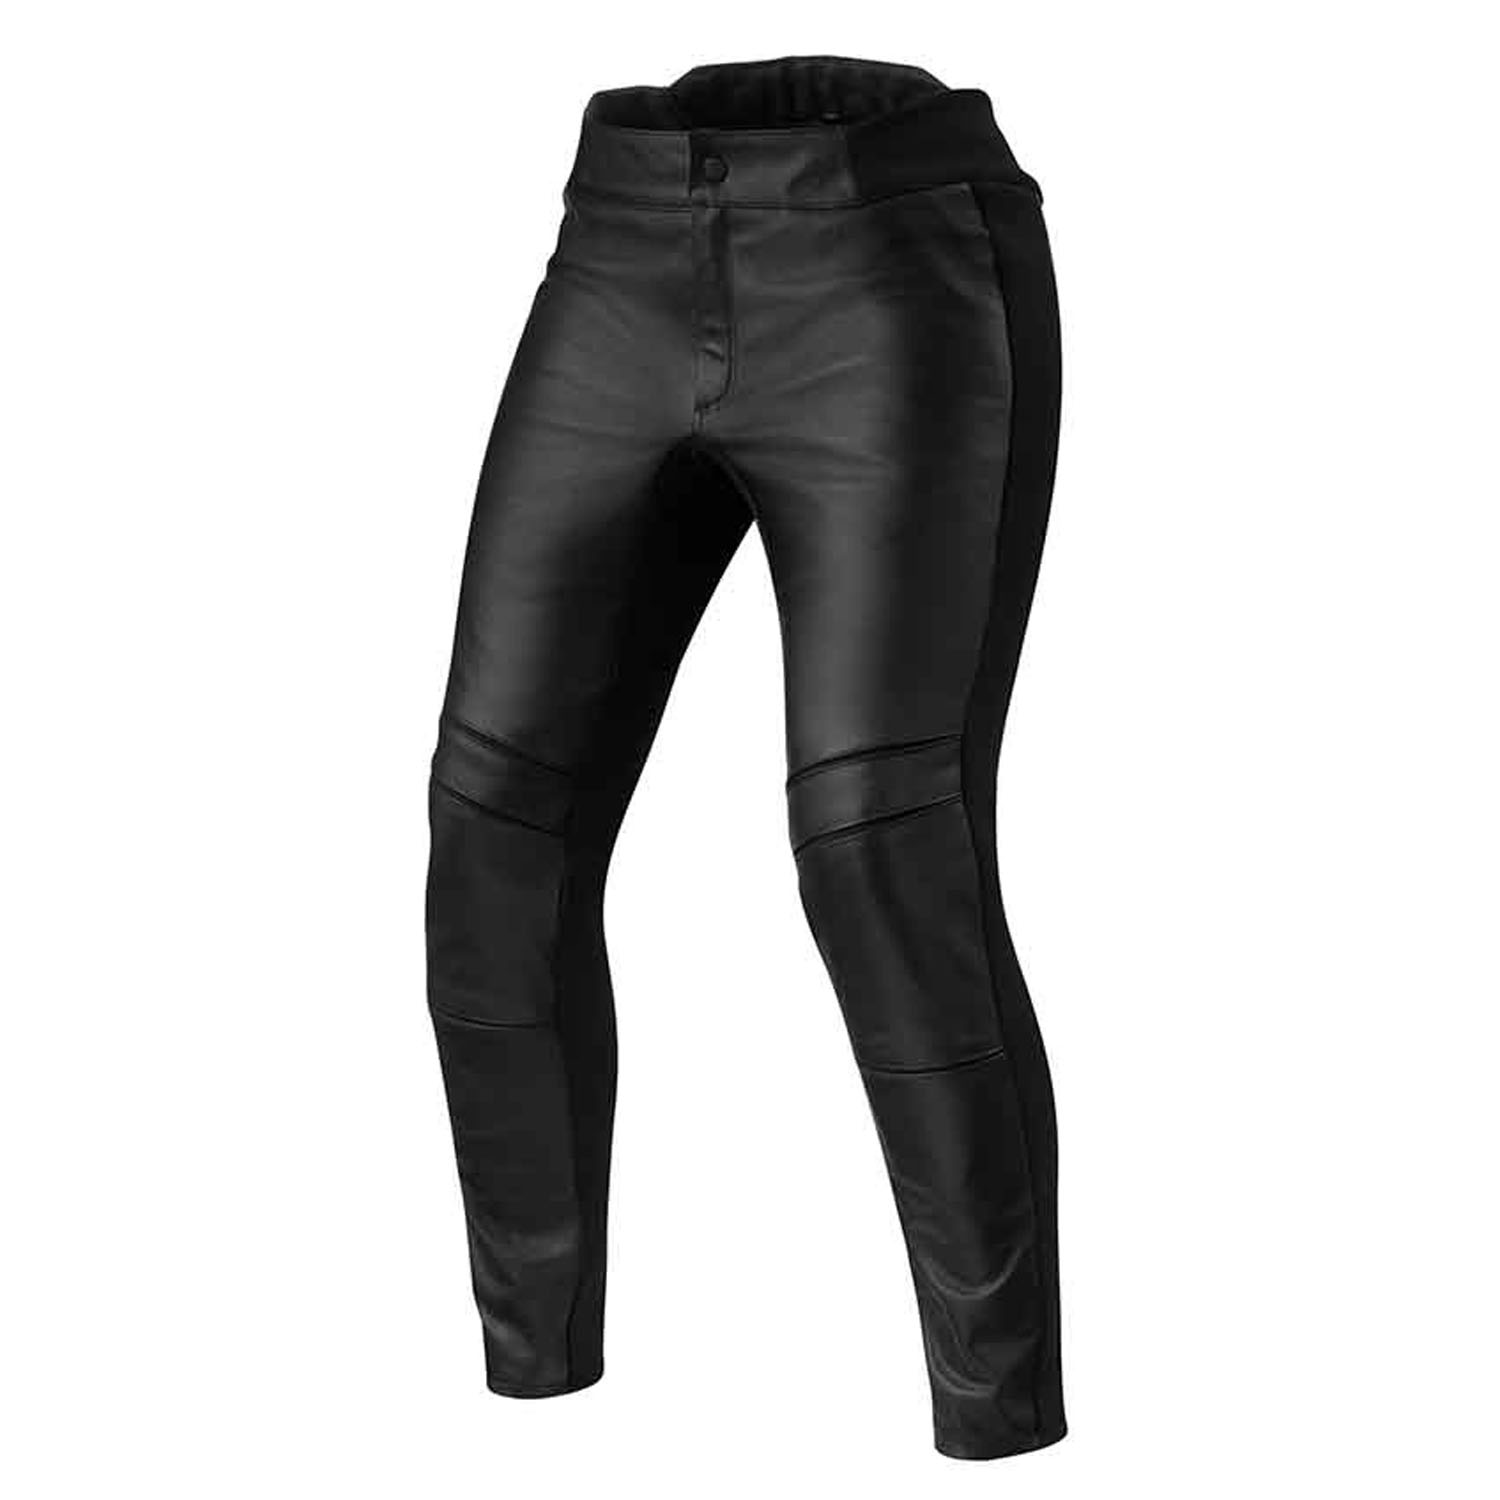 Image of REV'IT! Maci Ladies Black Standard Motorcycle Pants Size 40 ID 8700001359085